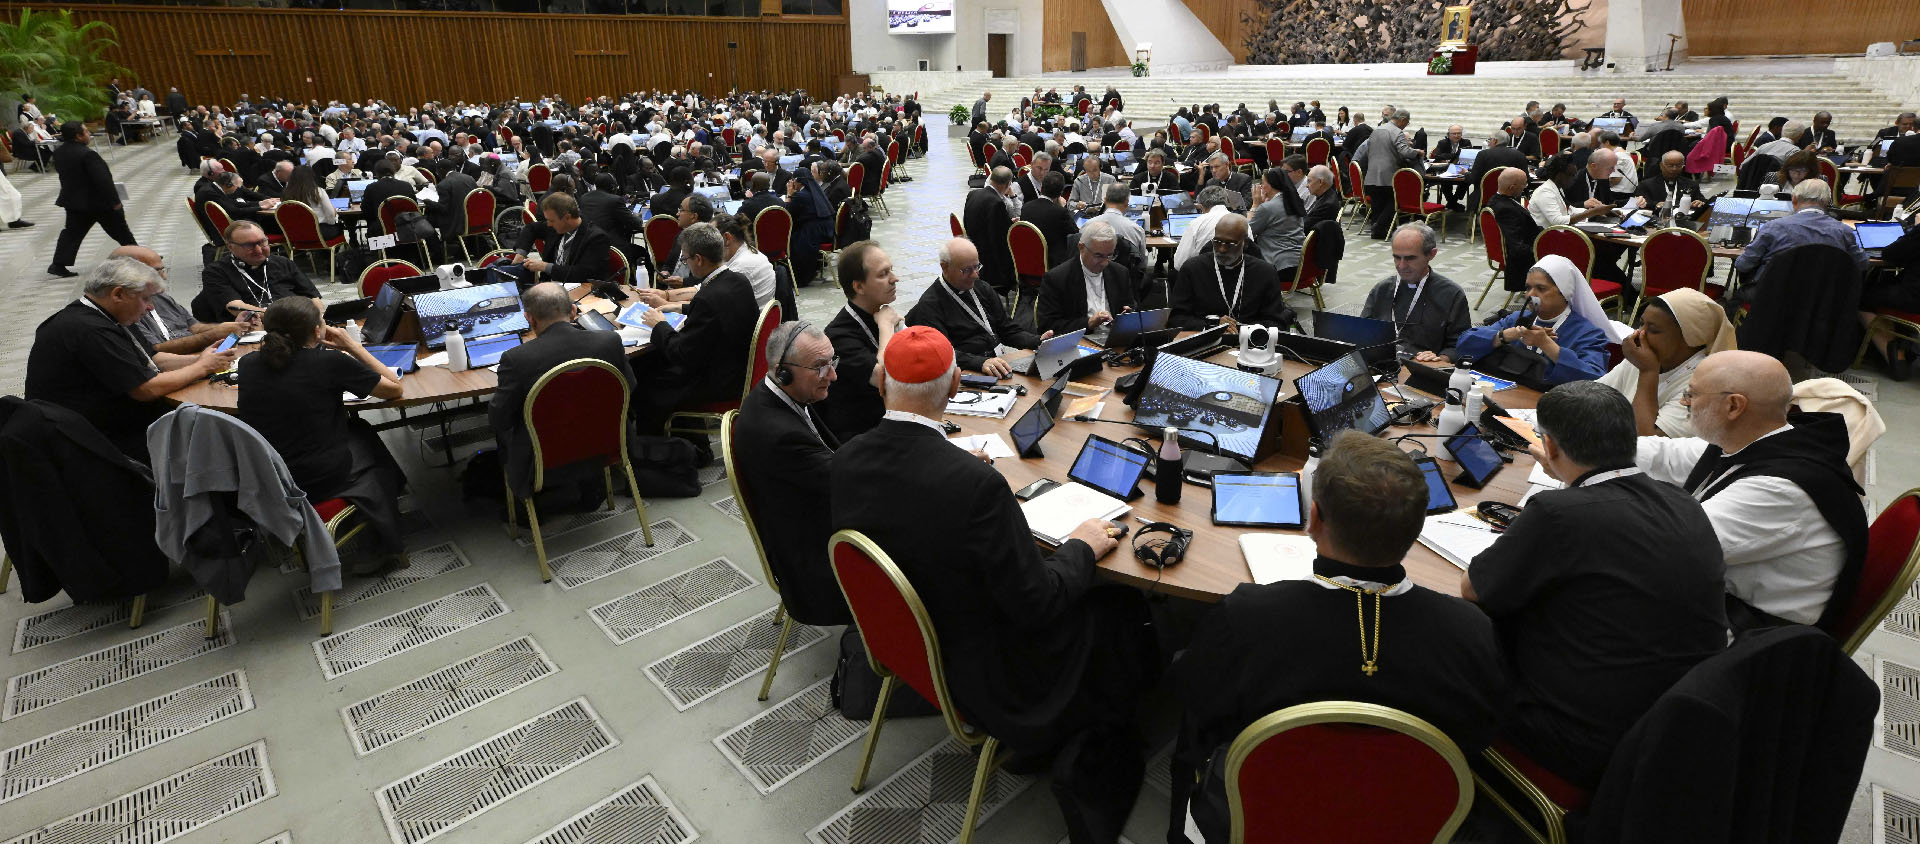 Plus de 1200 amendements ont été apportés pour la synthèse finale du Synode | © Vatican Media